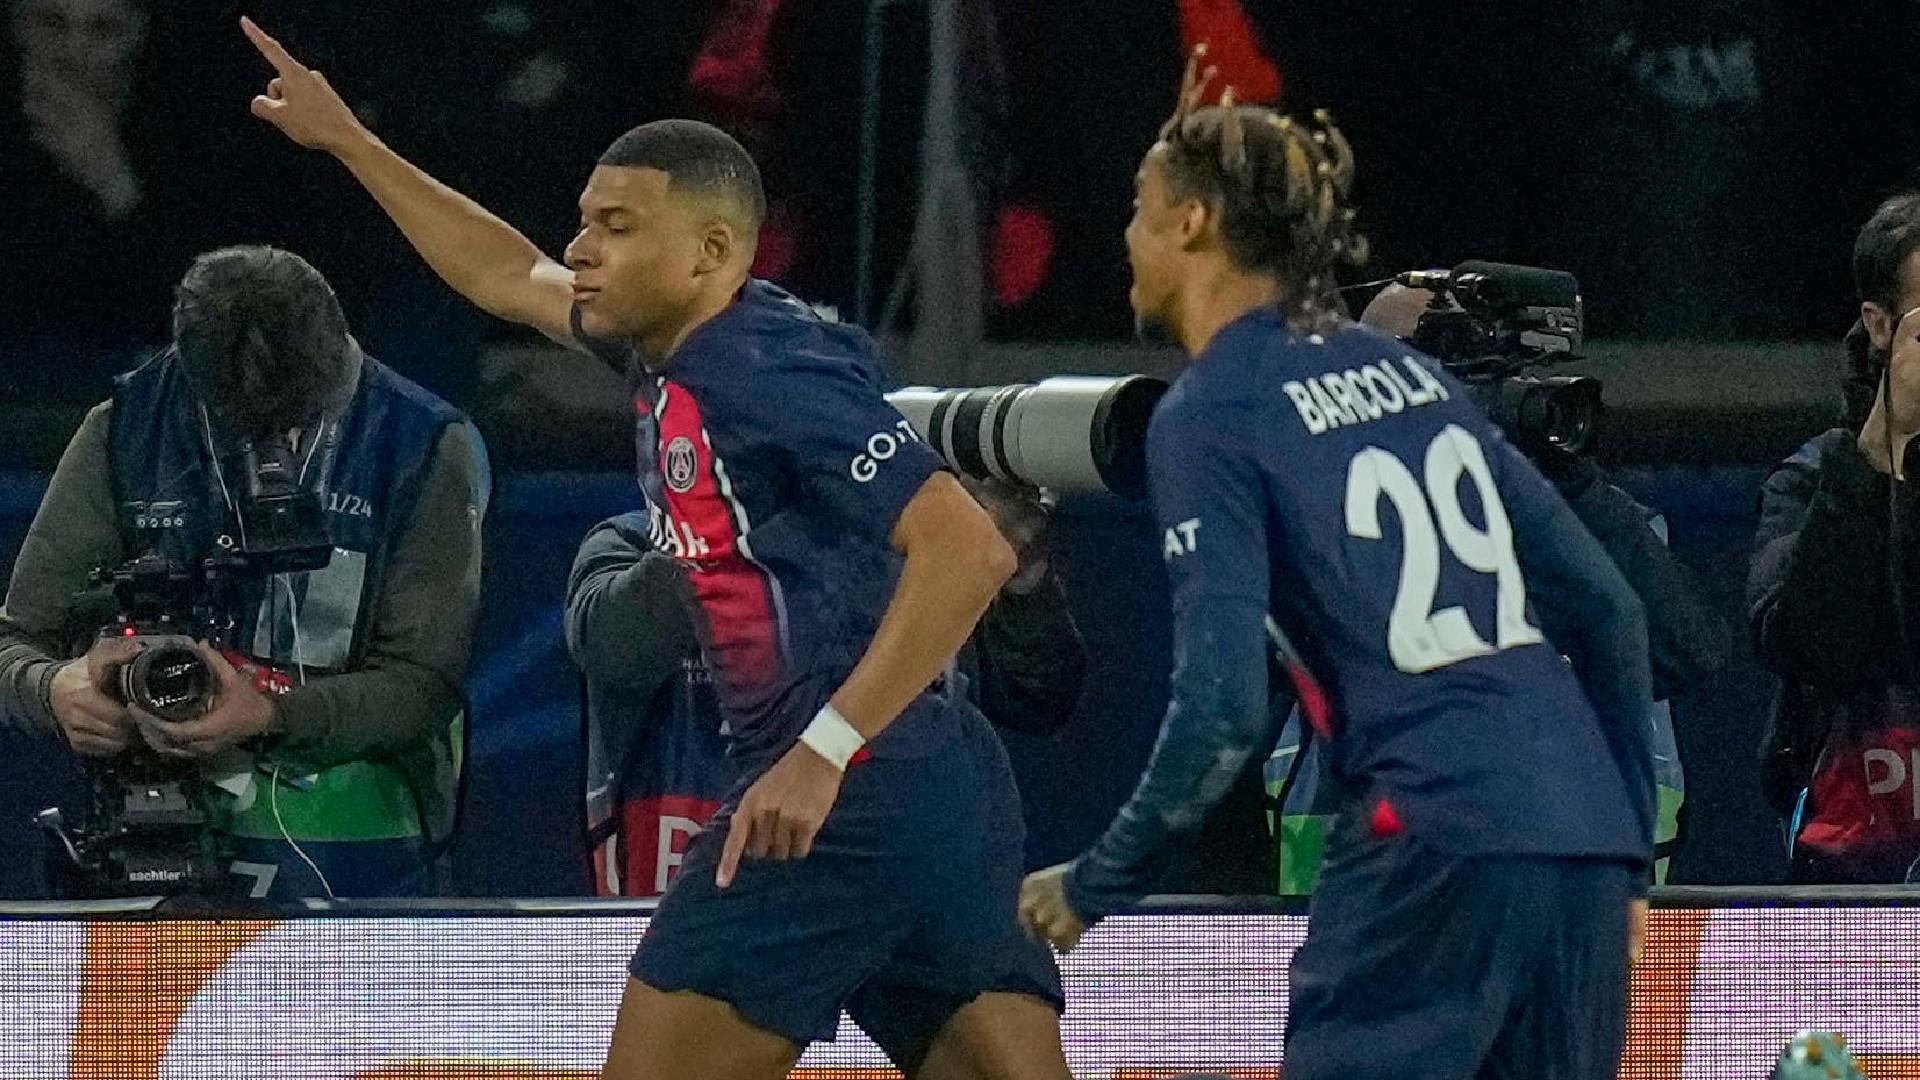 Kylian Mbappe helps Paris St Germain take charge of Real Sociedad tie